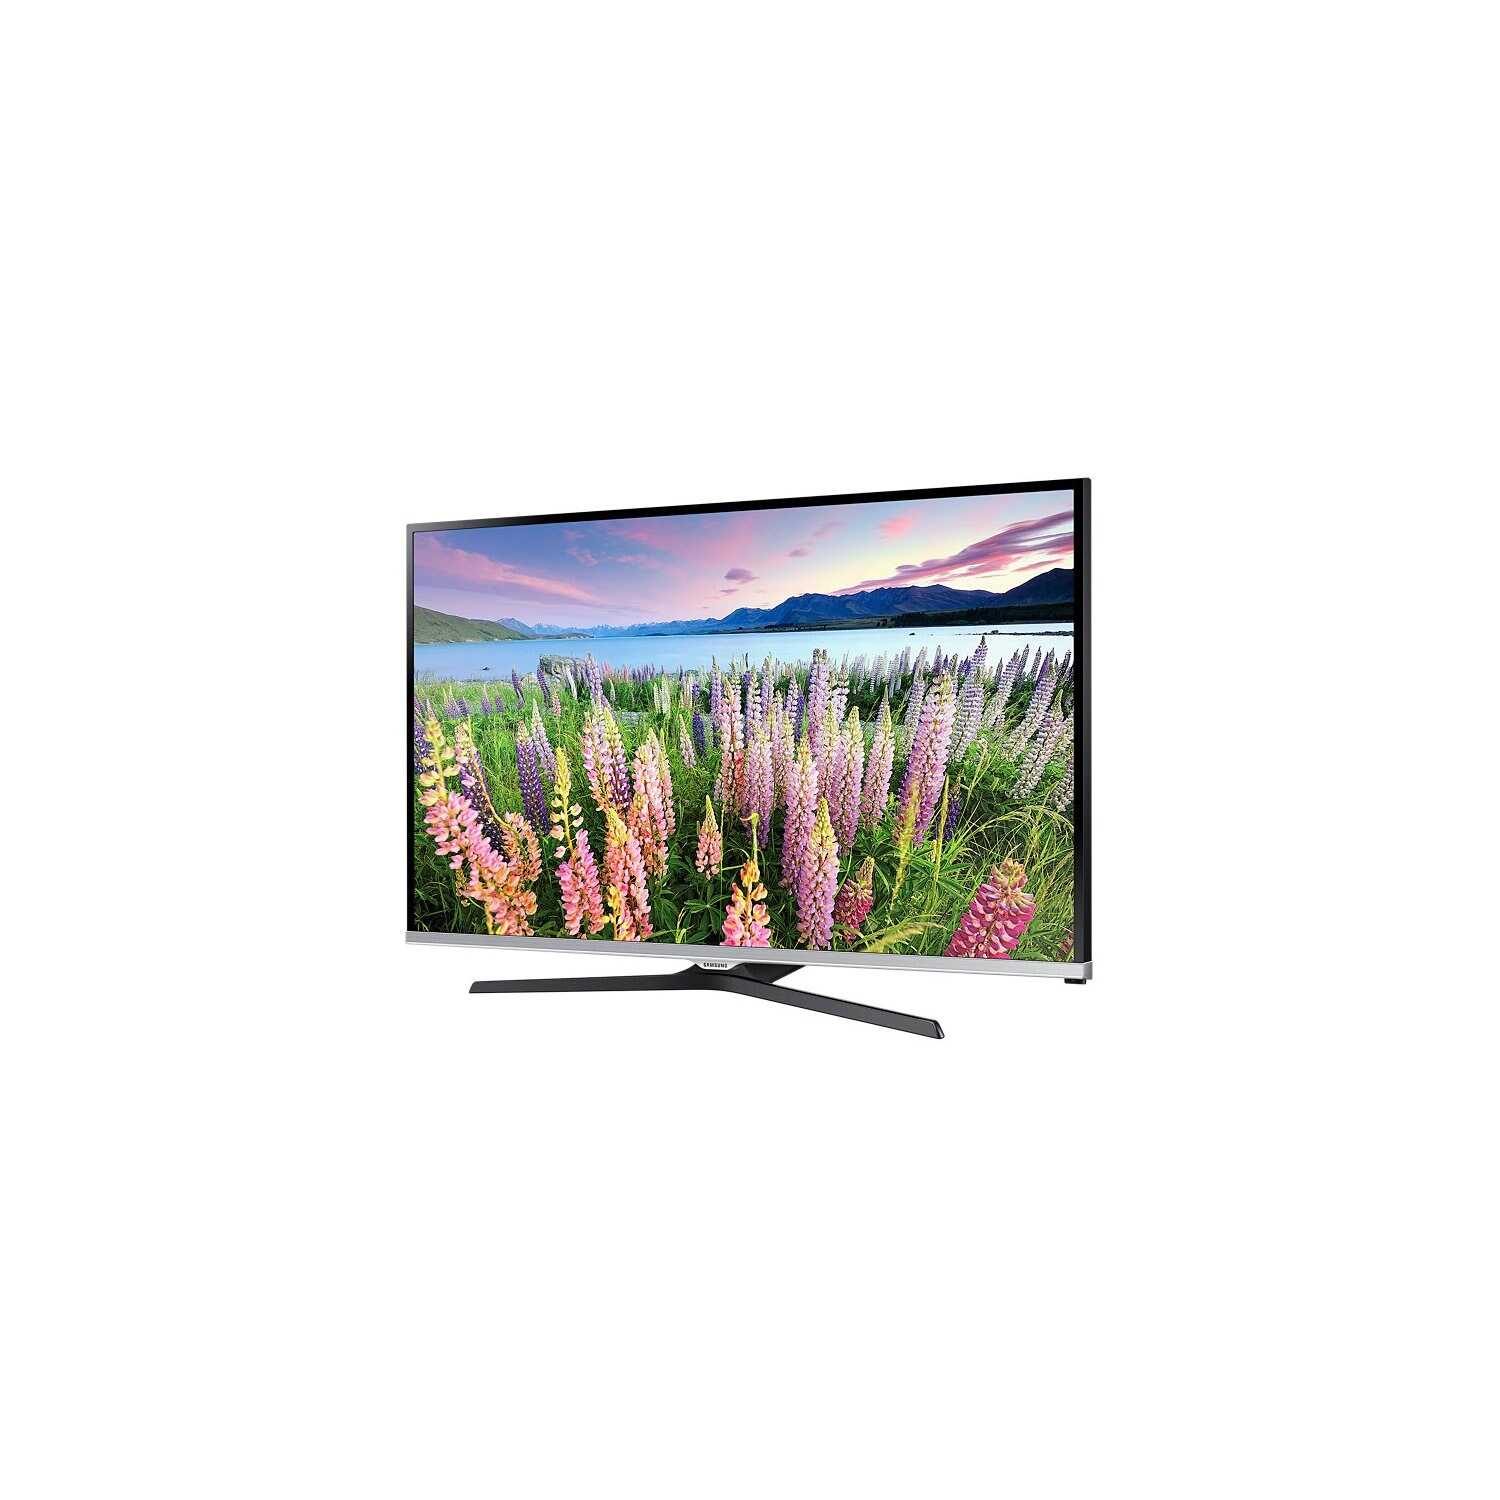 Led телевизор samsung ue40j6390au (черный) (ue40j6390auxru) купить от 34890 руб в самаре, сравнить цены, отзывы, видео обзоры и характеристики